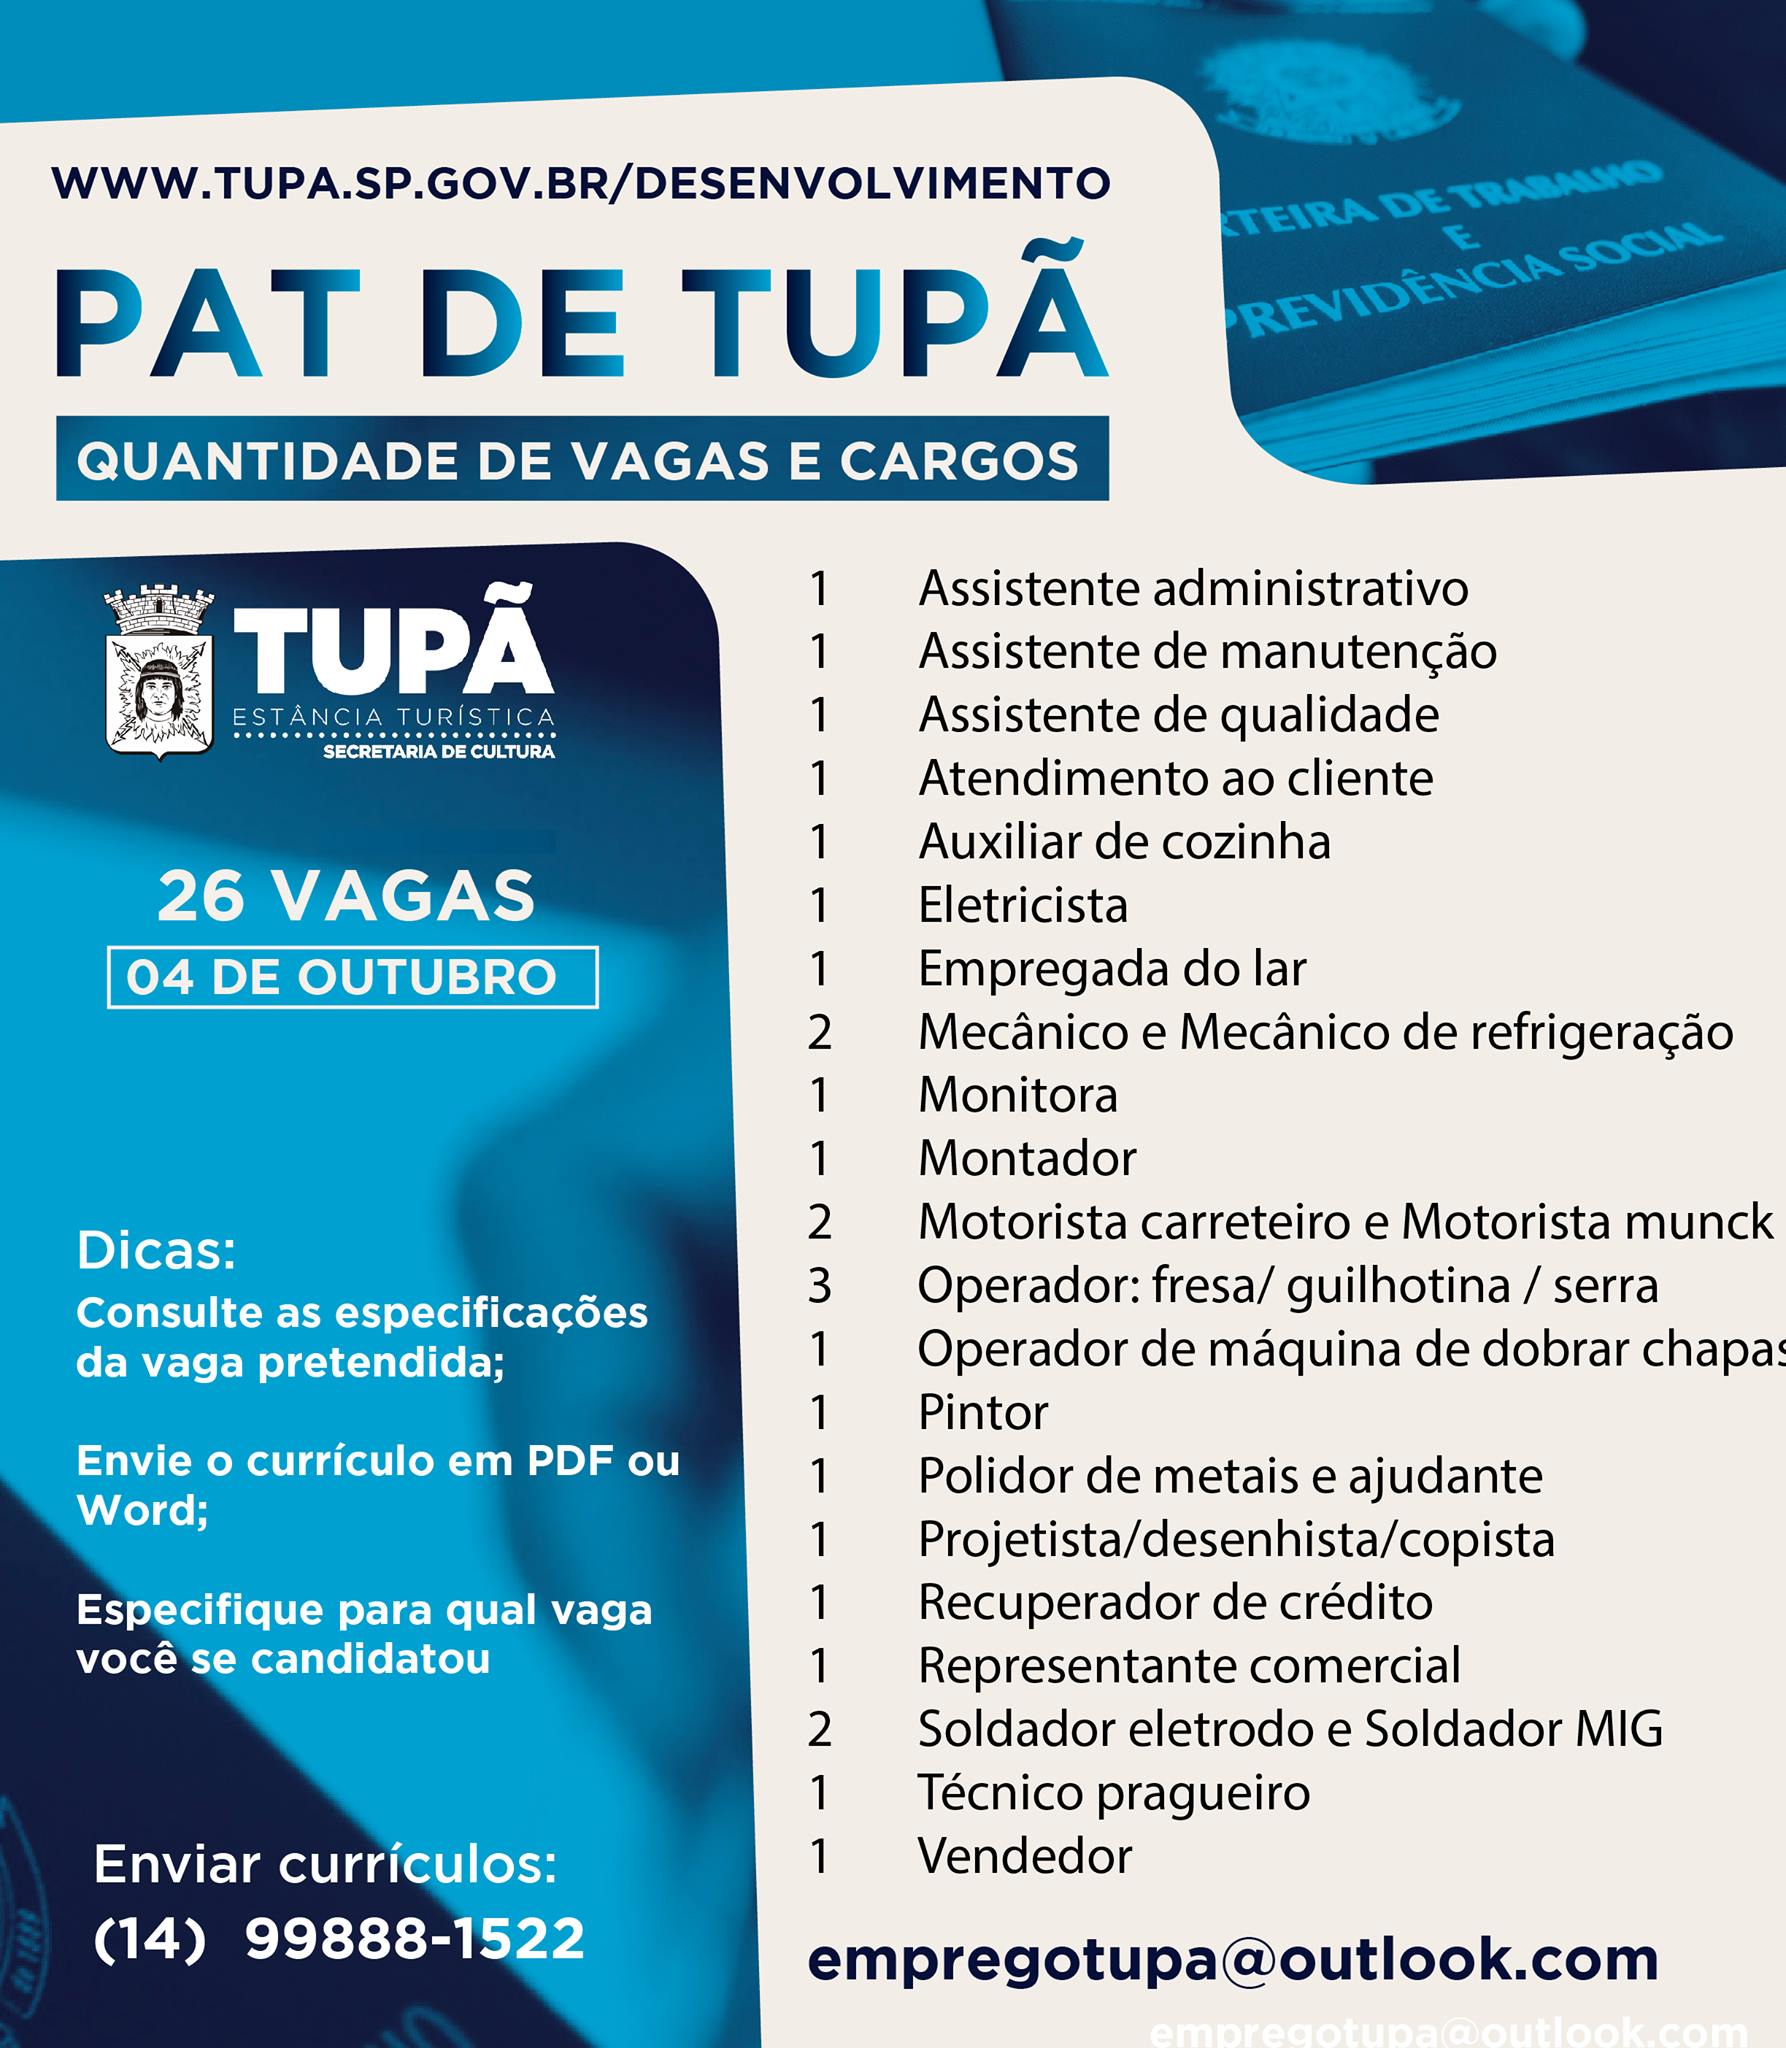 PAT está com 26 vagas de empregos disponíveis para Tupã e região